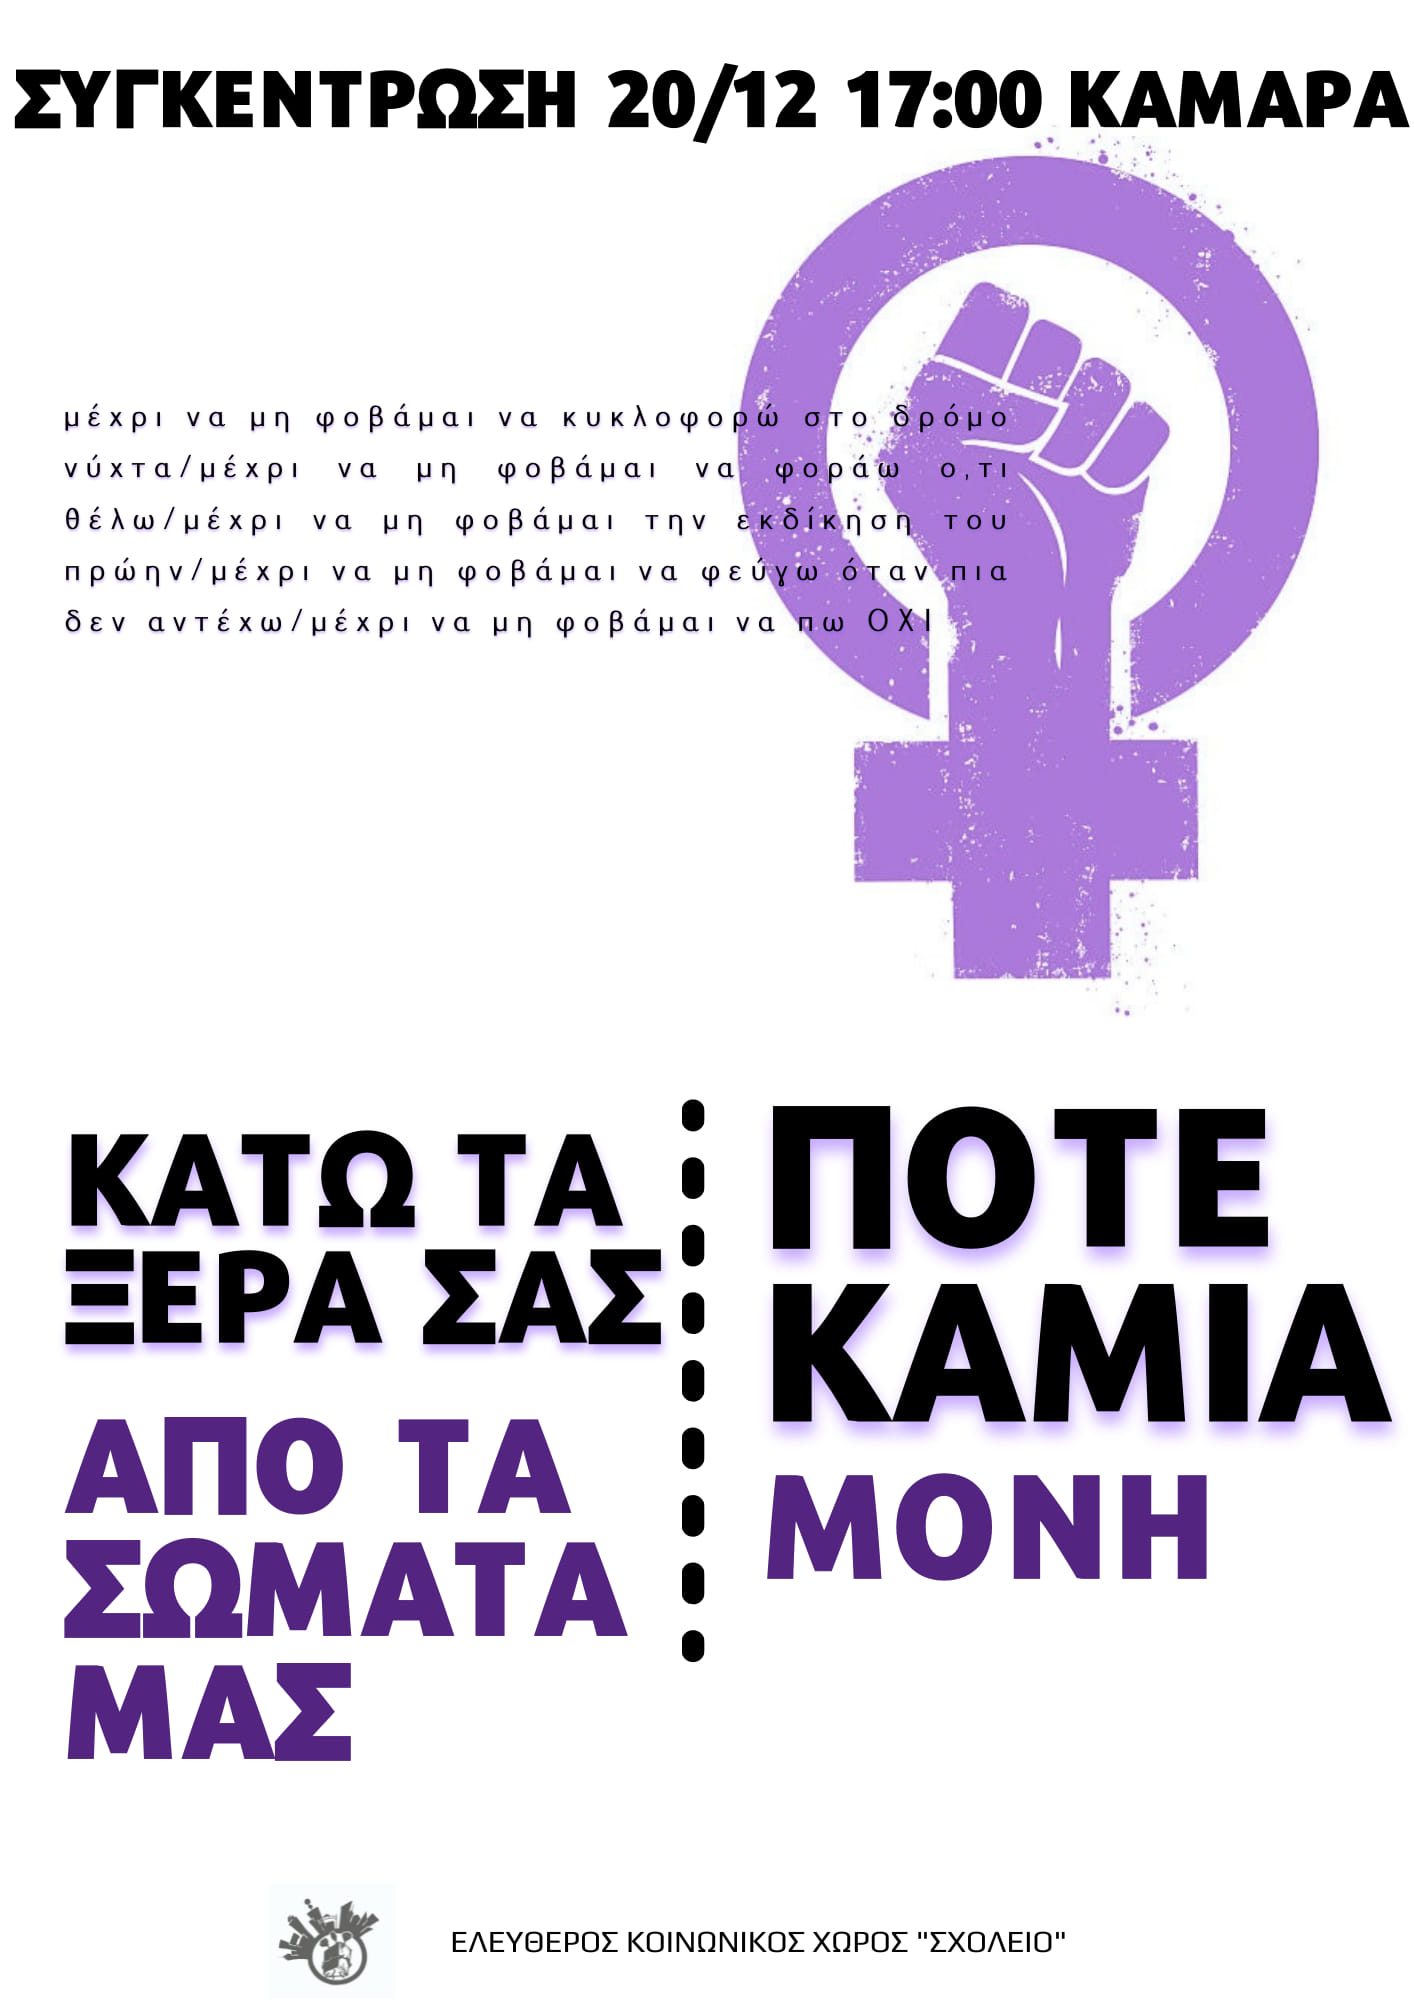 Θεσσαλονίκη | Συγκέντρωση ενάντια στην έμφυλη βία, Δευτέρα 20/12 στις 17:00, Καμάρα